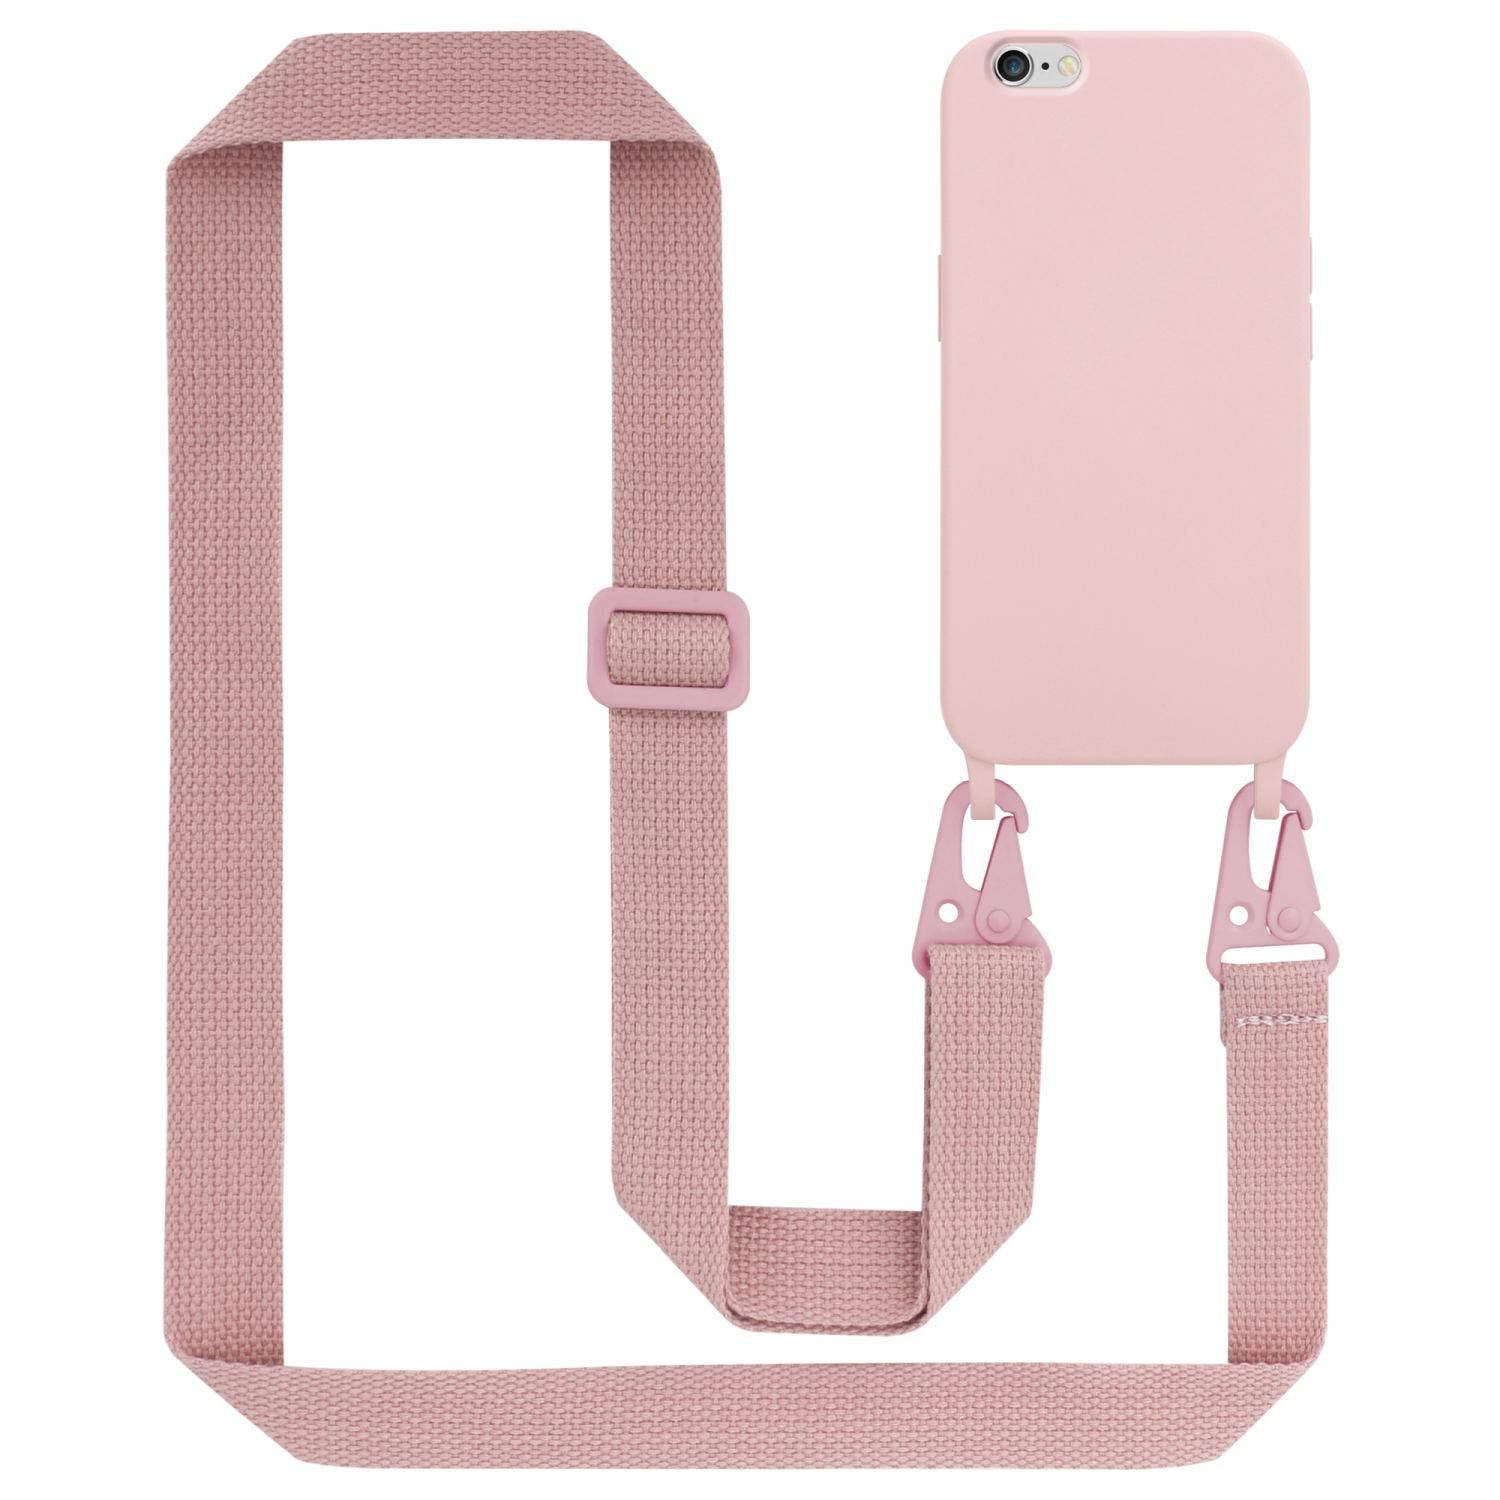 Cadorabo Mobiele telefoon ketting voor Apple iPhone 6 / 6S in LIQUID ROZE - Silicone beschermhoes met lengte verstelbare koord riem